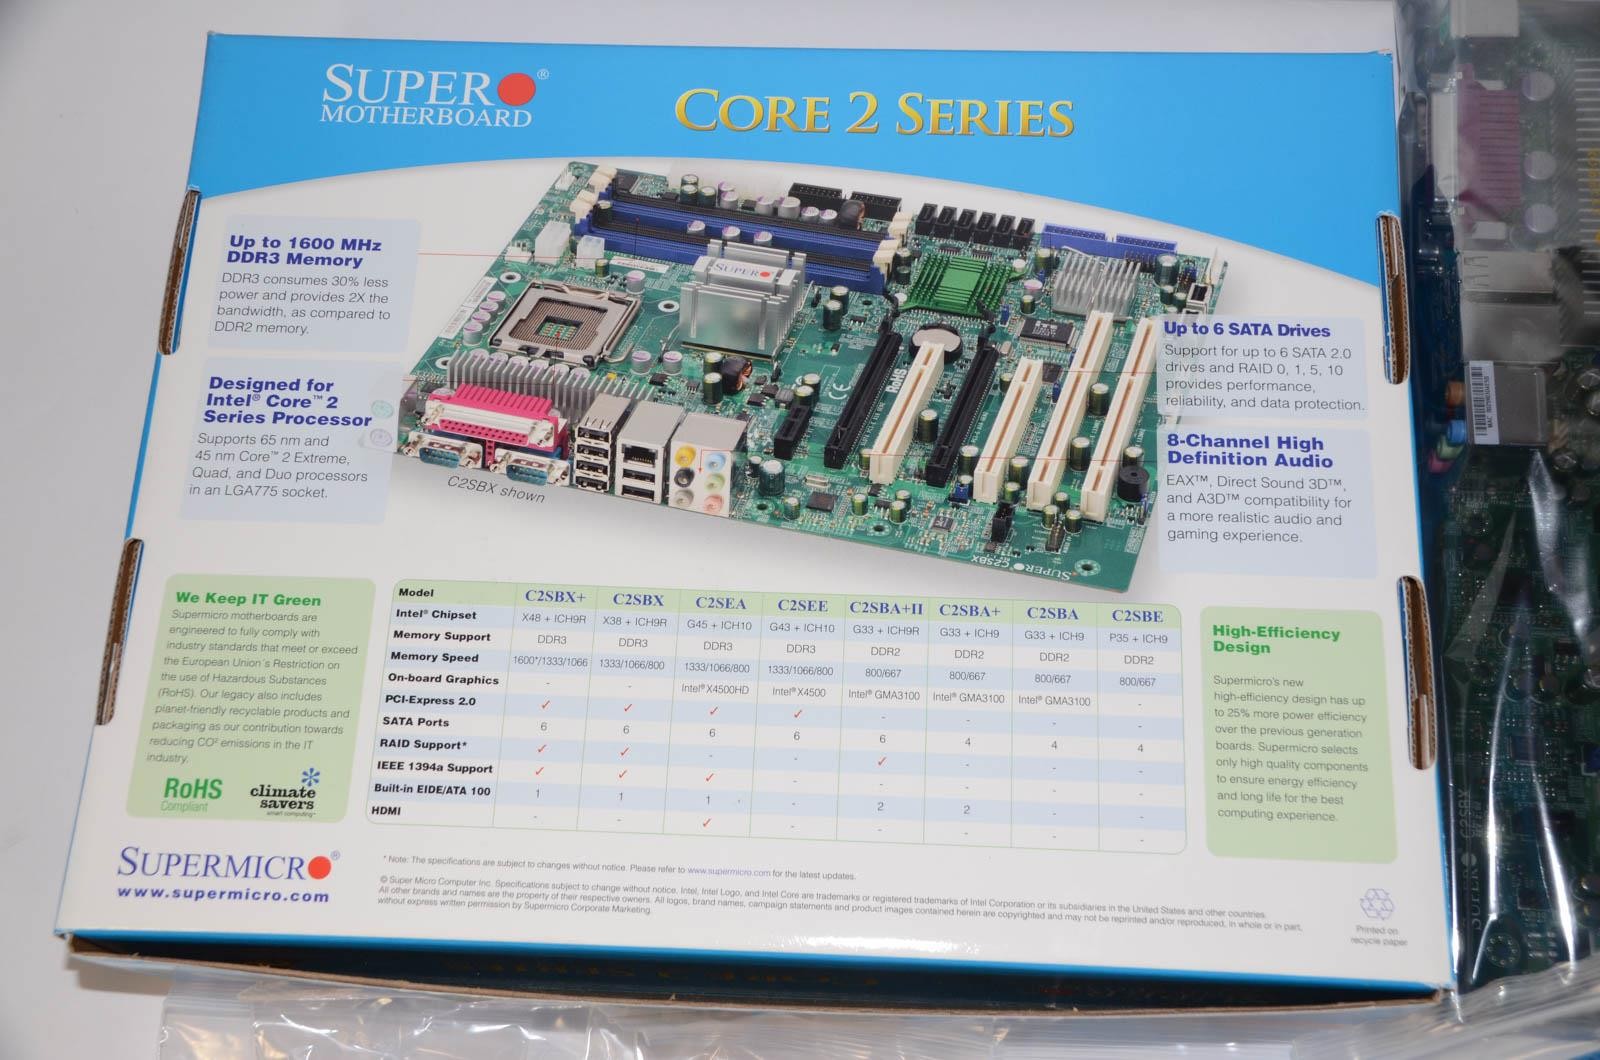 NEW Supermicro C2SBX MBD-C2SBX-O Intel X38 ICH9R DDR3 1600 LGA775